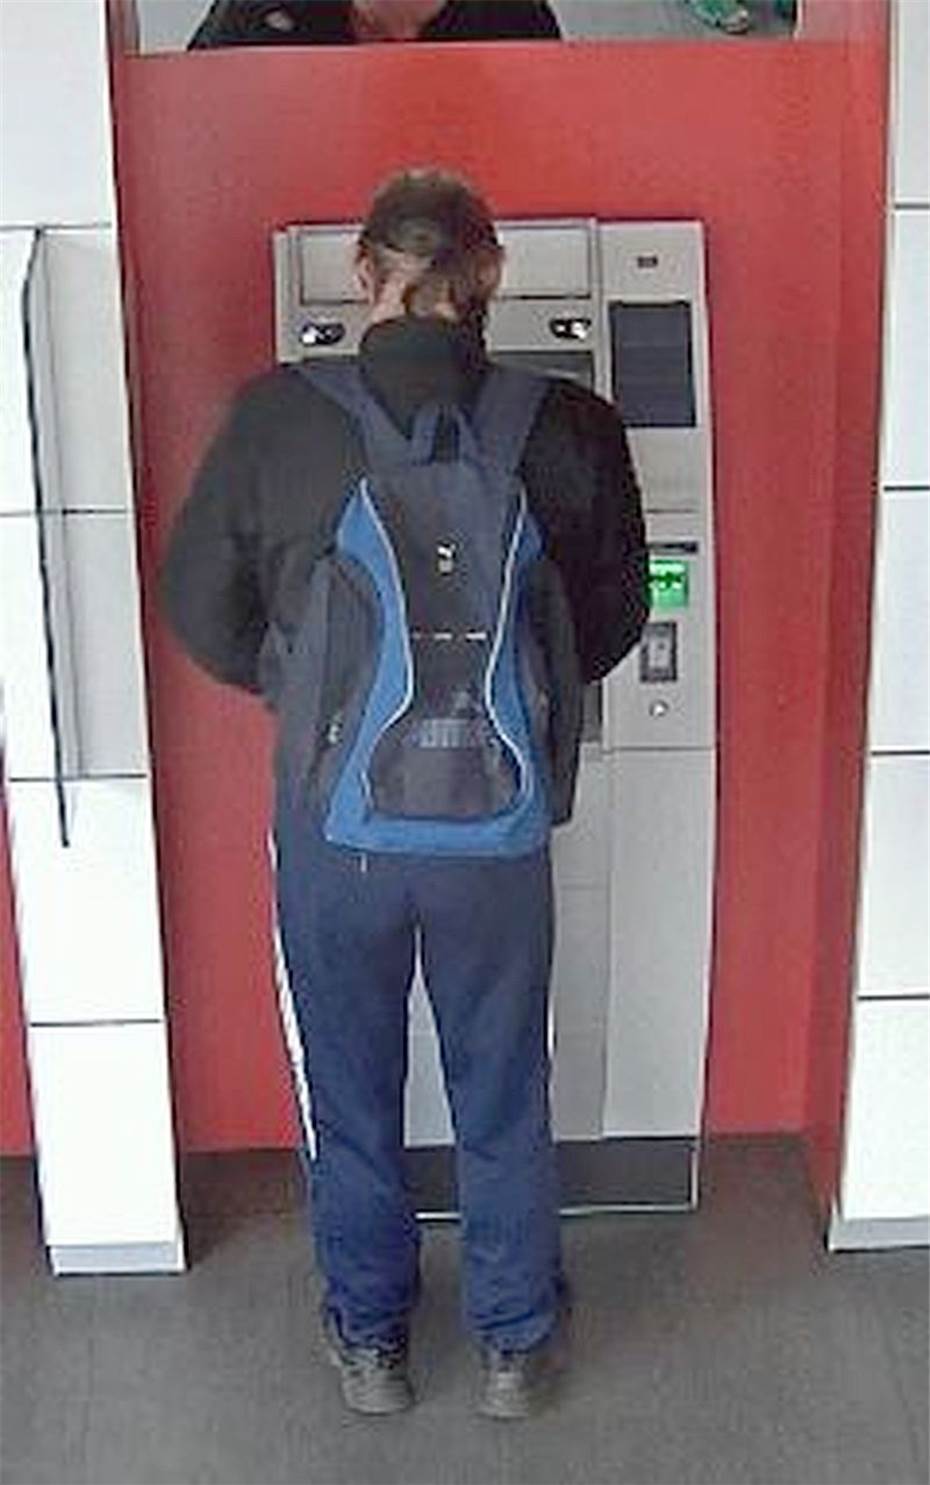 Unbekannter unterschlägt Geld aus Geldautomat